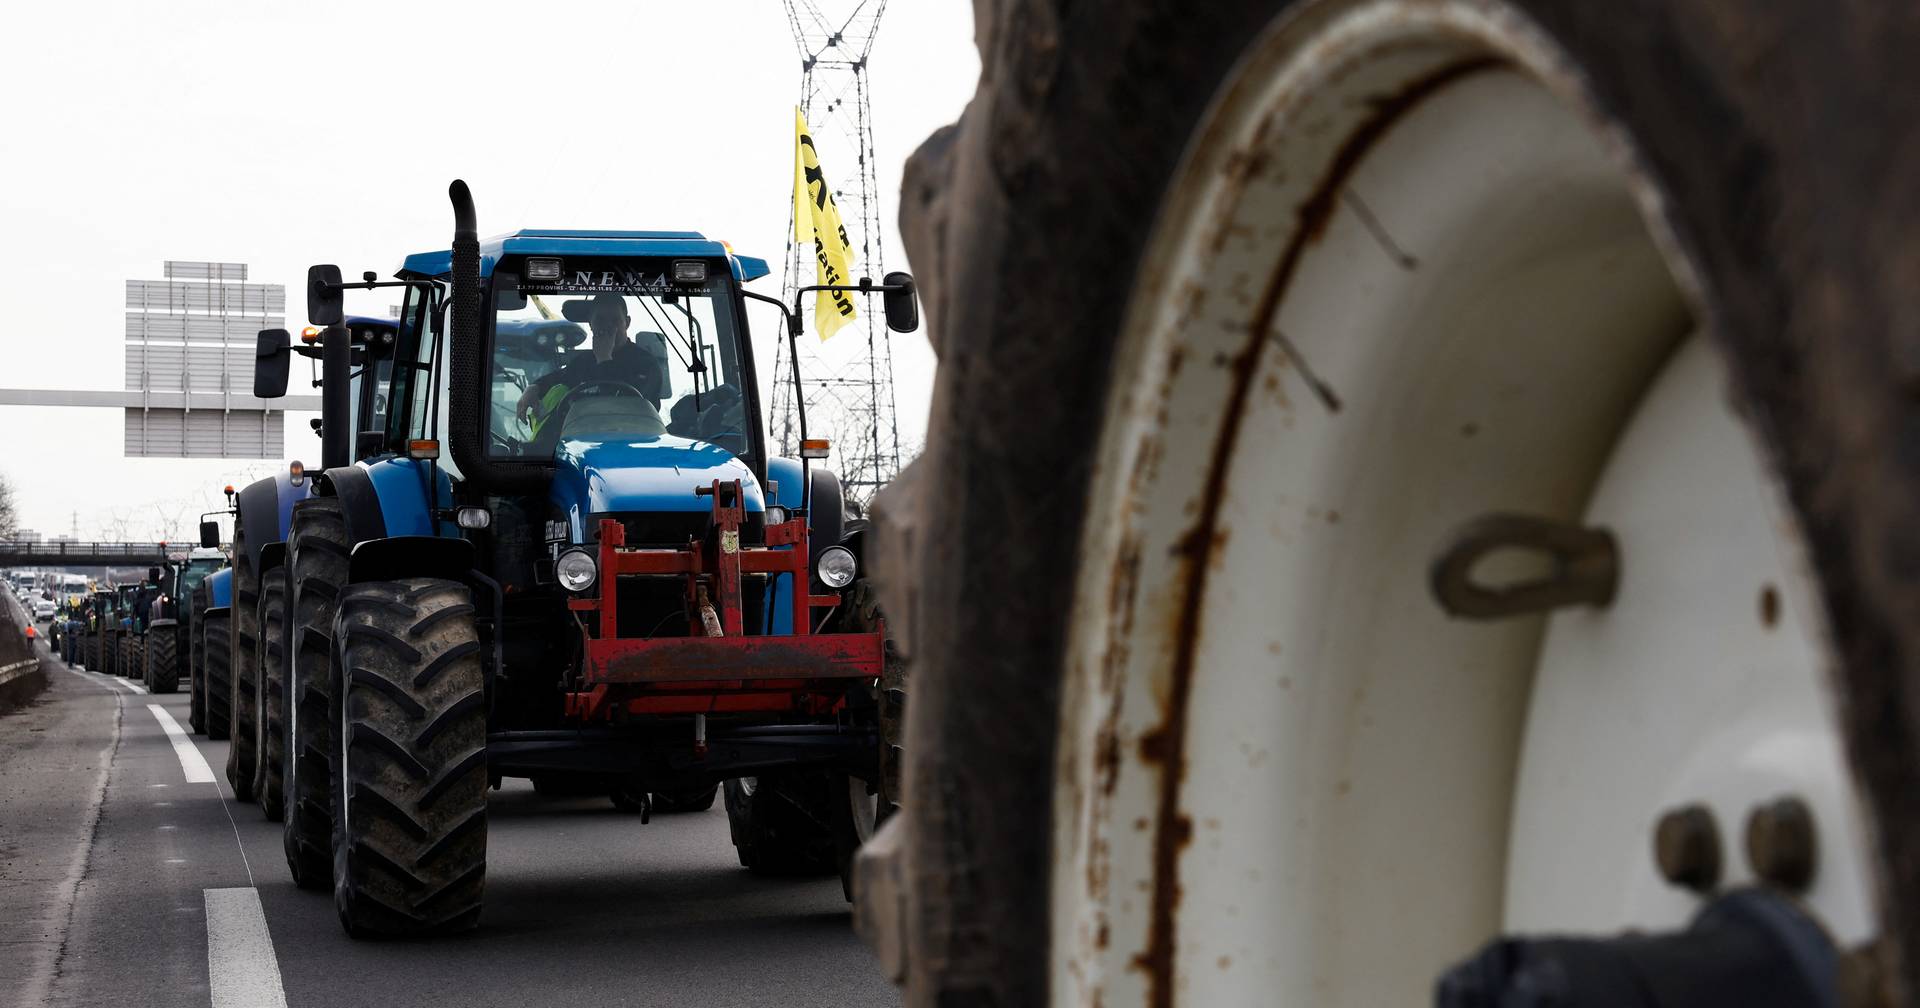 Crise en France : le gouvernement trace des « lignes rouges » après le blocus des agriculteurs